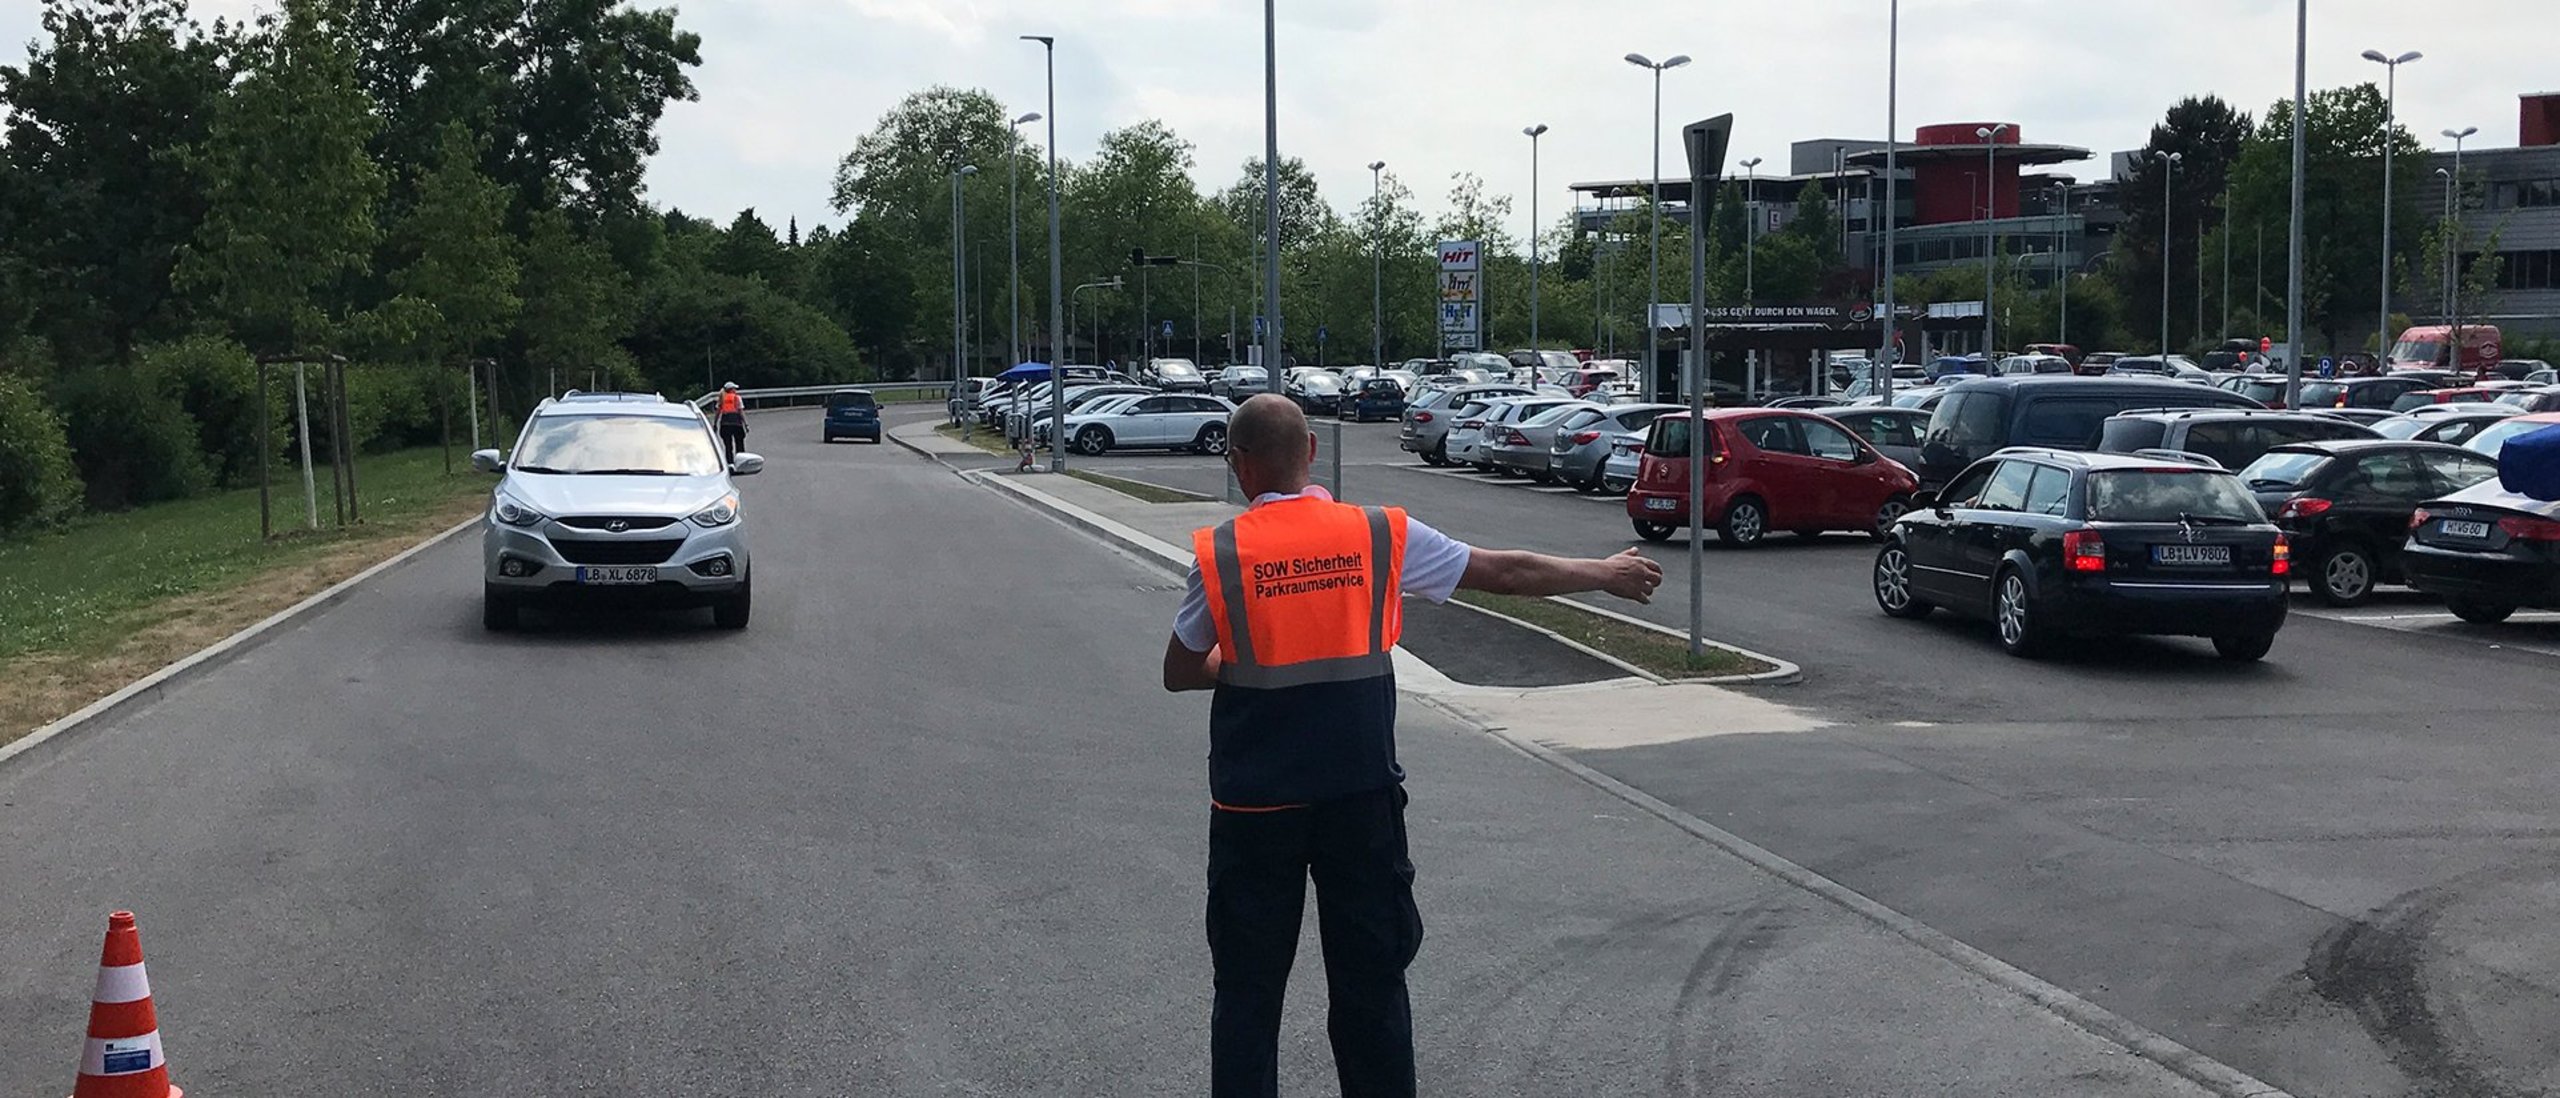 Parkraumservice Parkplatzdienst Parkeinweiser Veranstaltunssicherheit Security